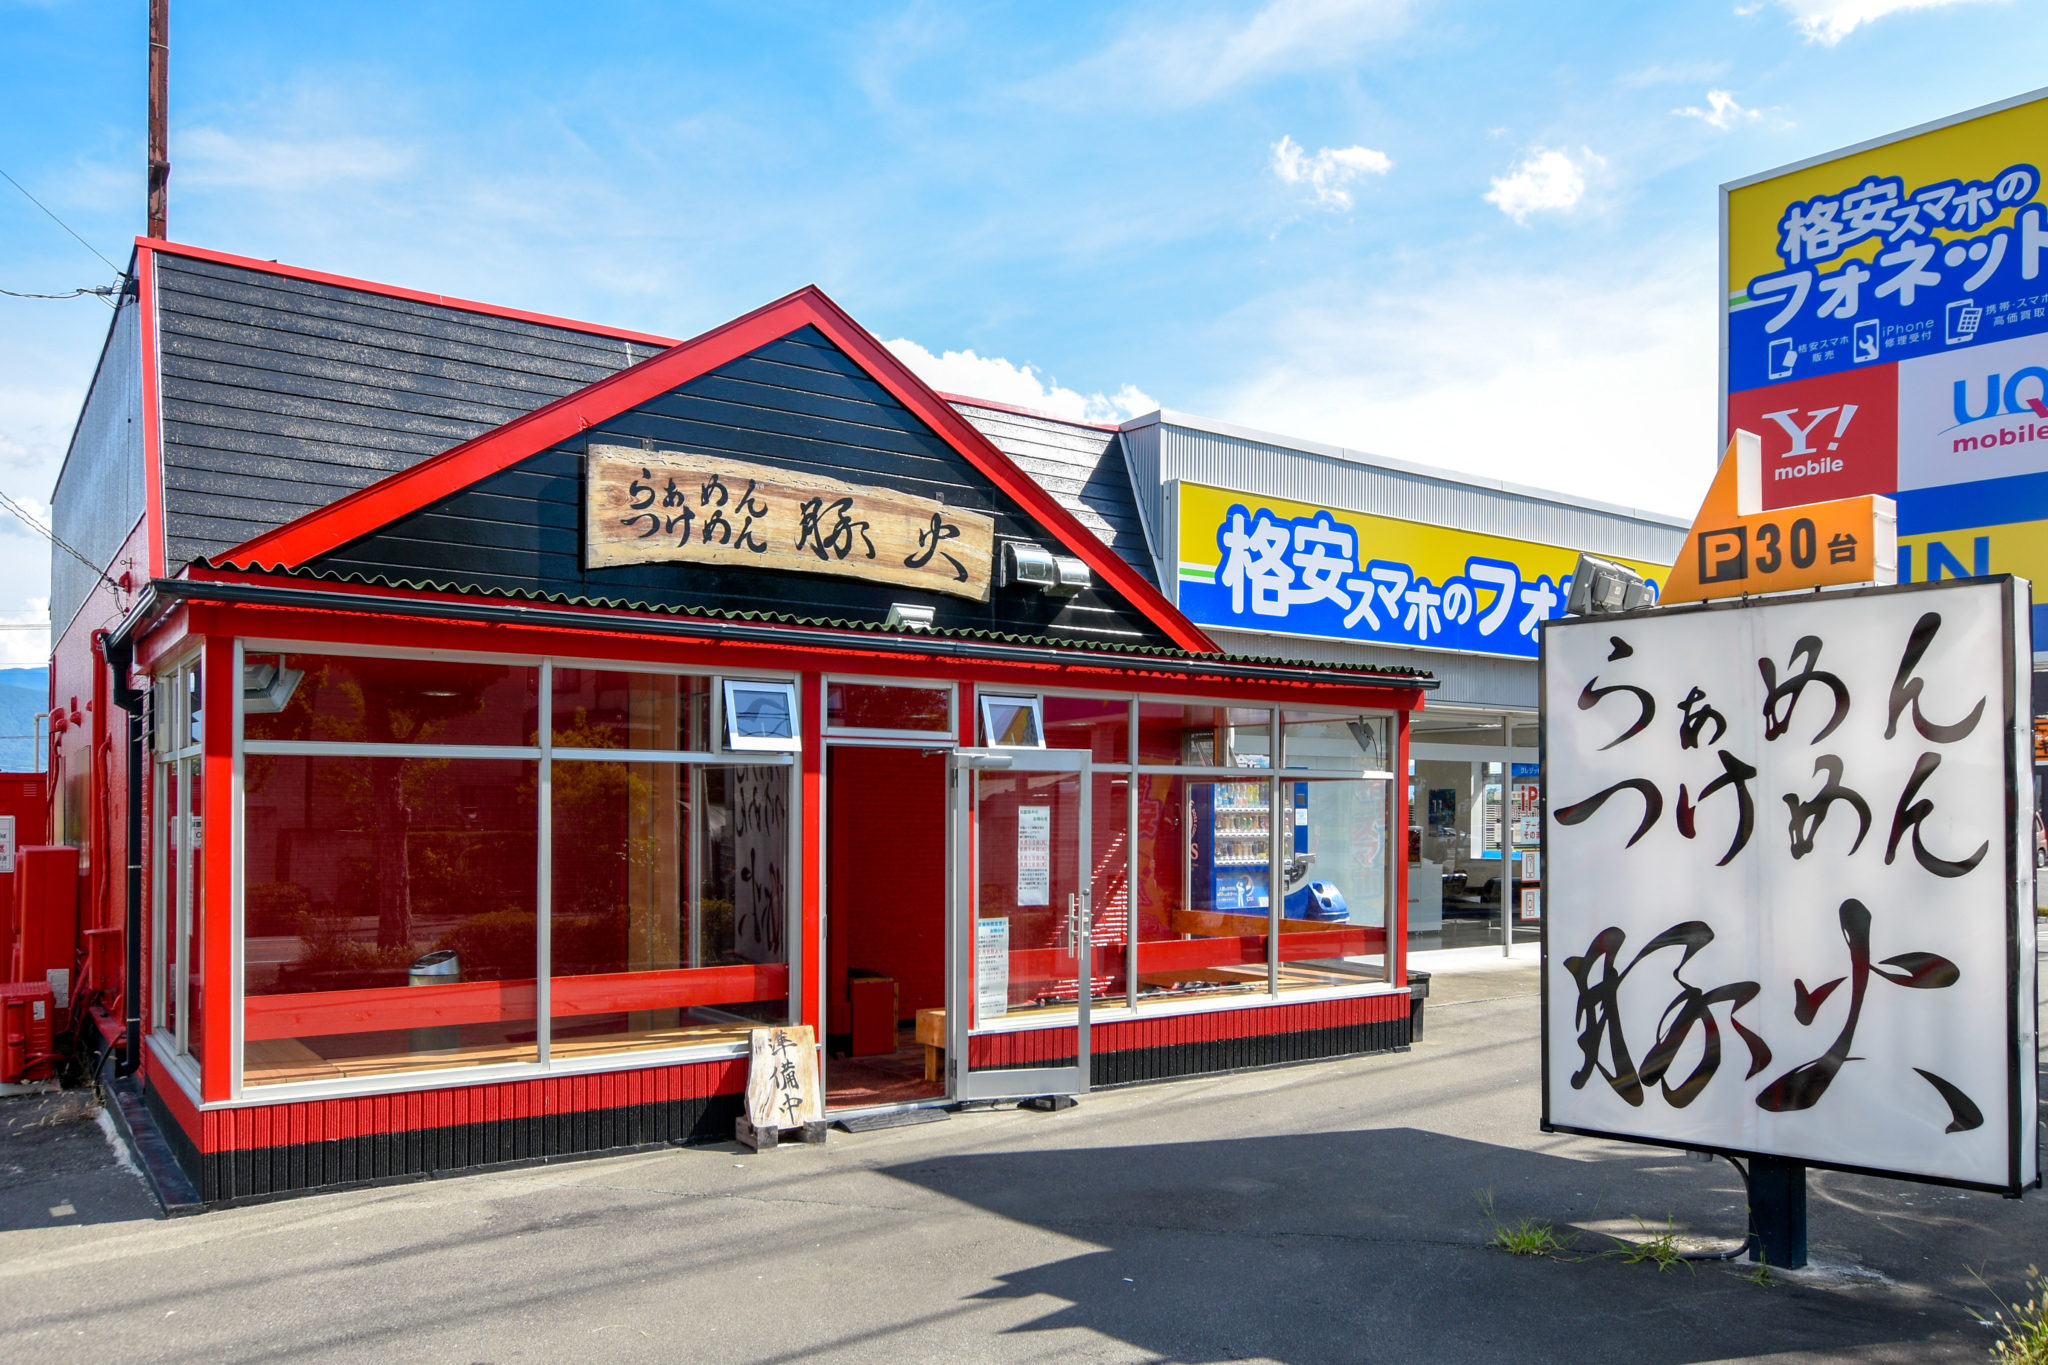 らぁめんつけめん 豚火 本店 昭和町 グルメ ラーメン 5